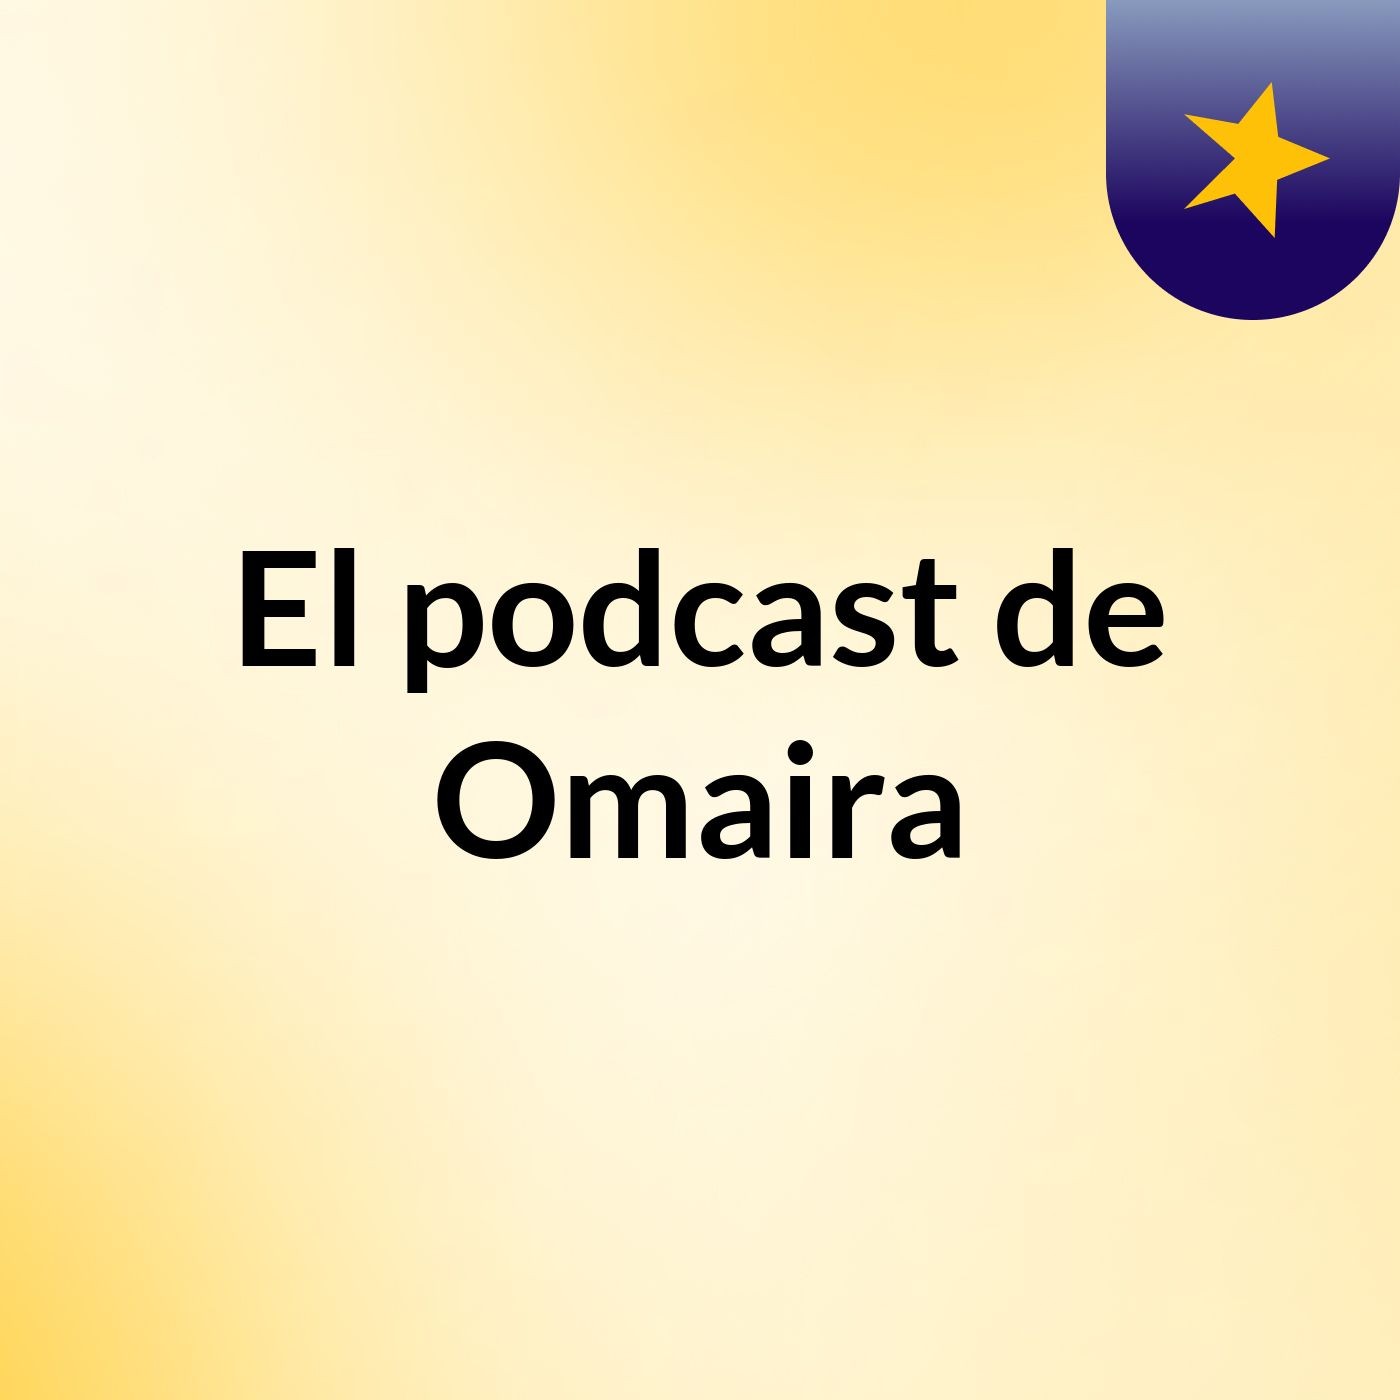 El podcast de Omaira